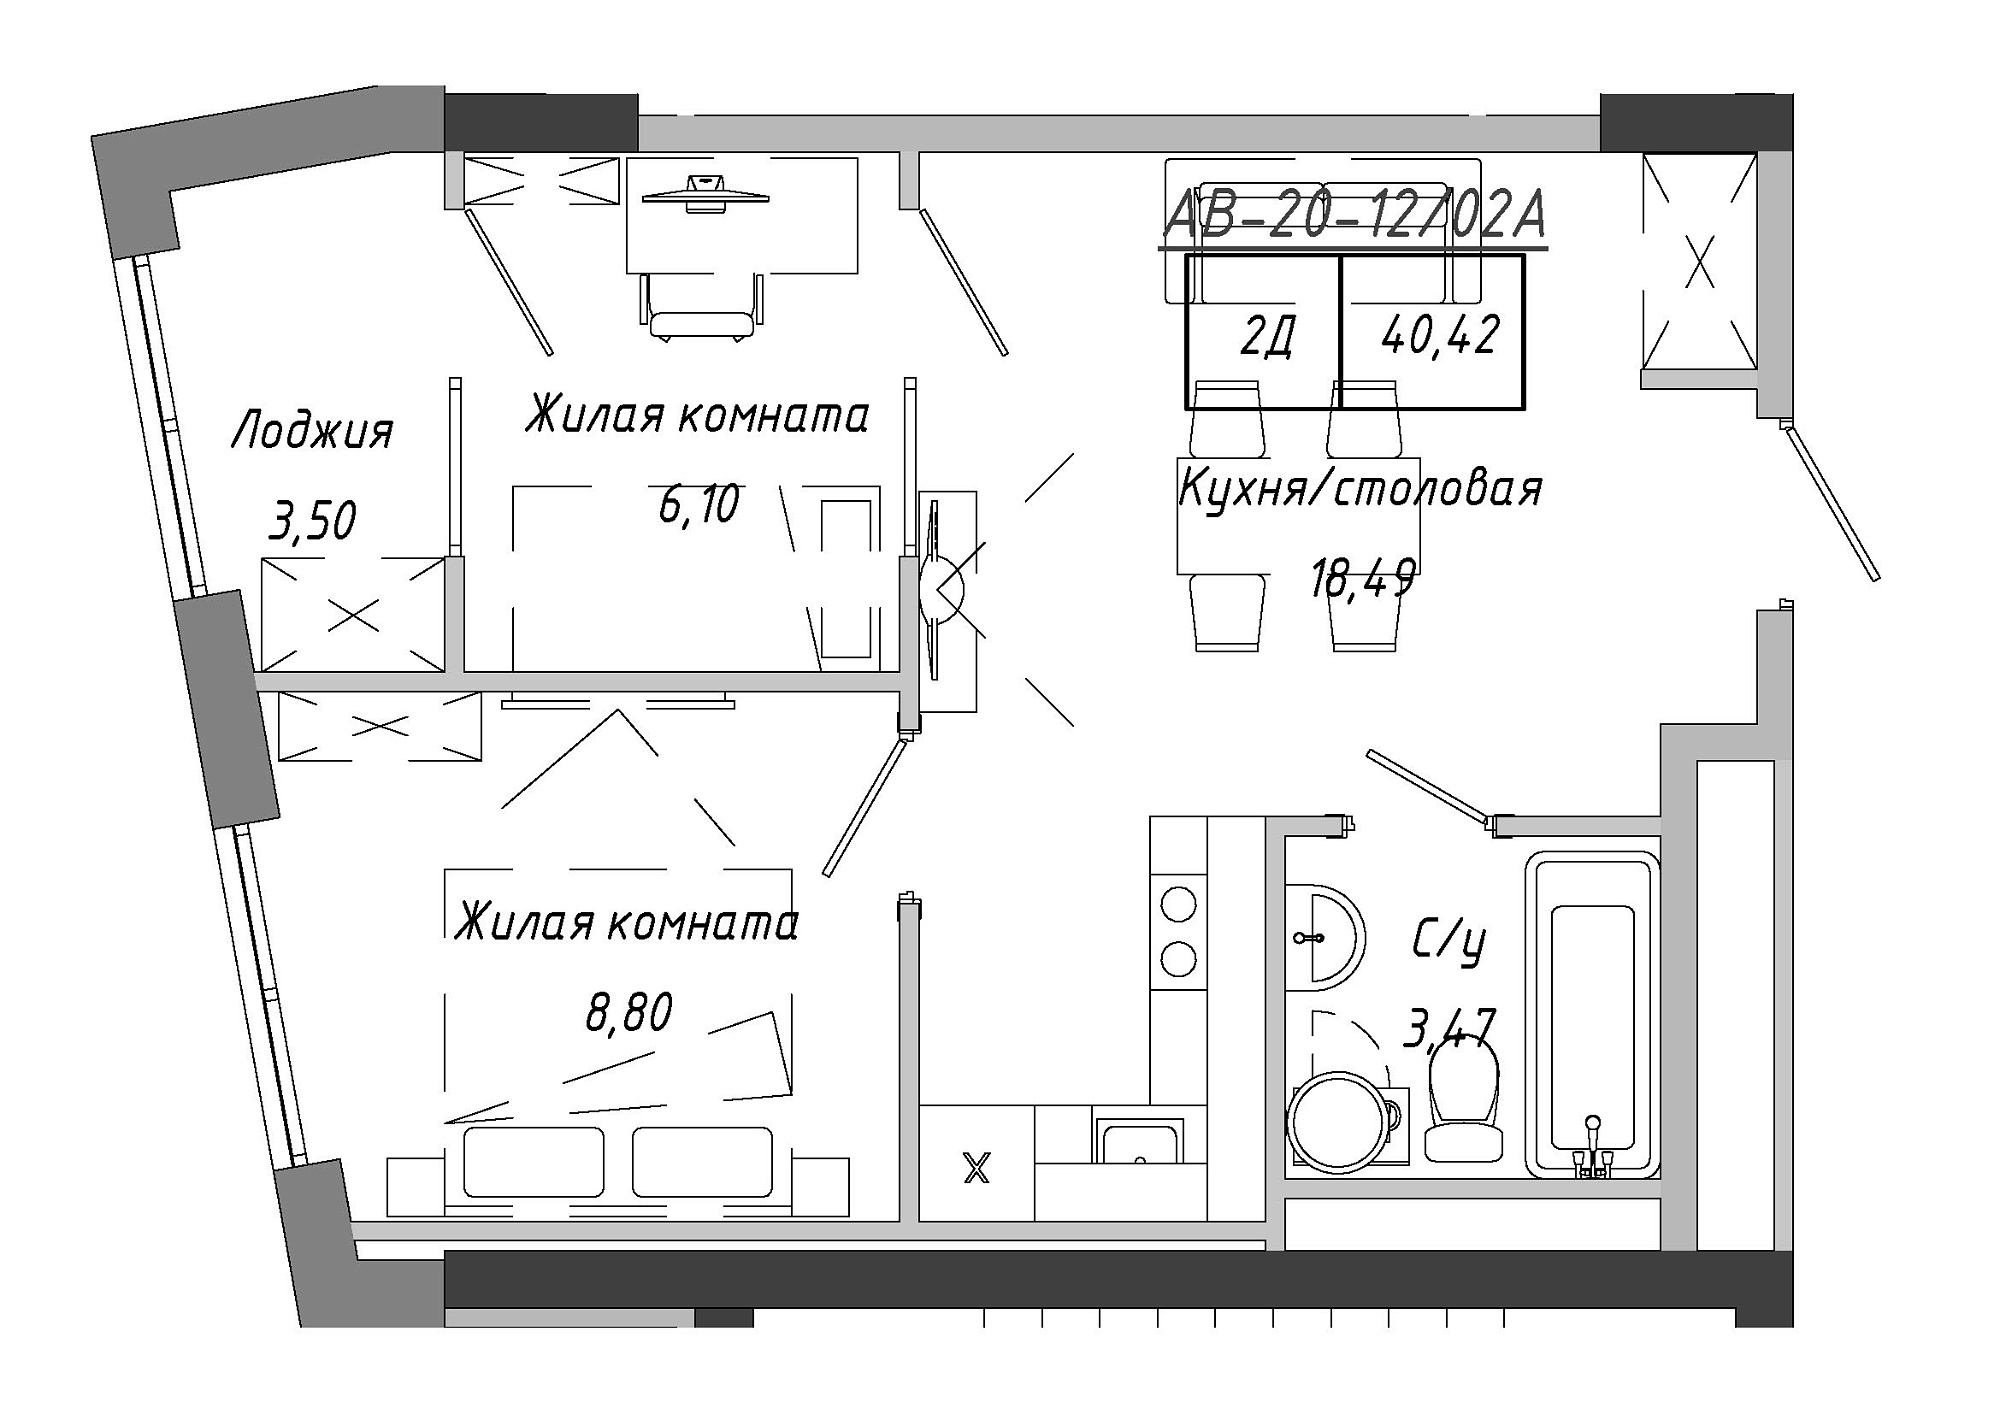 Планування 2-к квартира площею 41.9м2, AB-20-12/0002а.